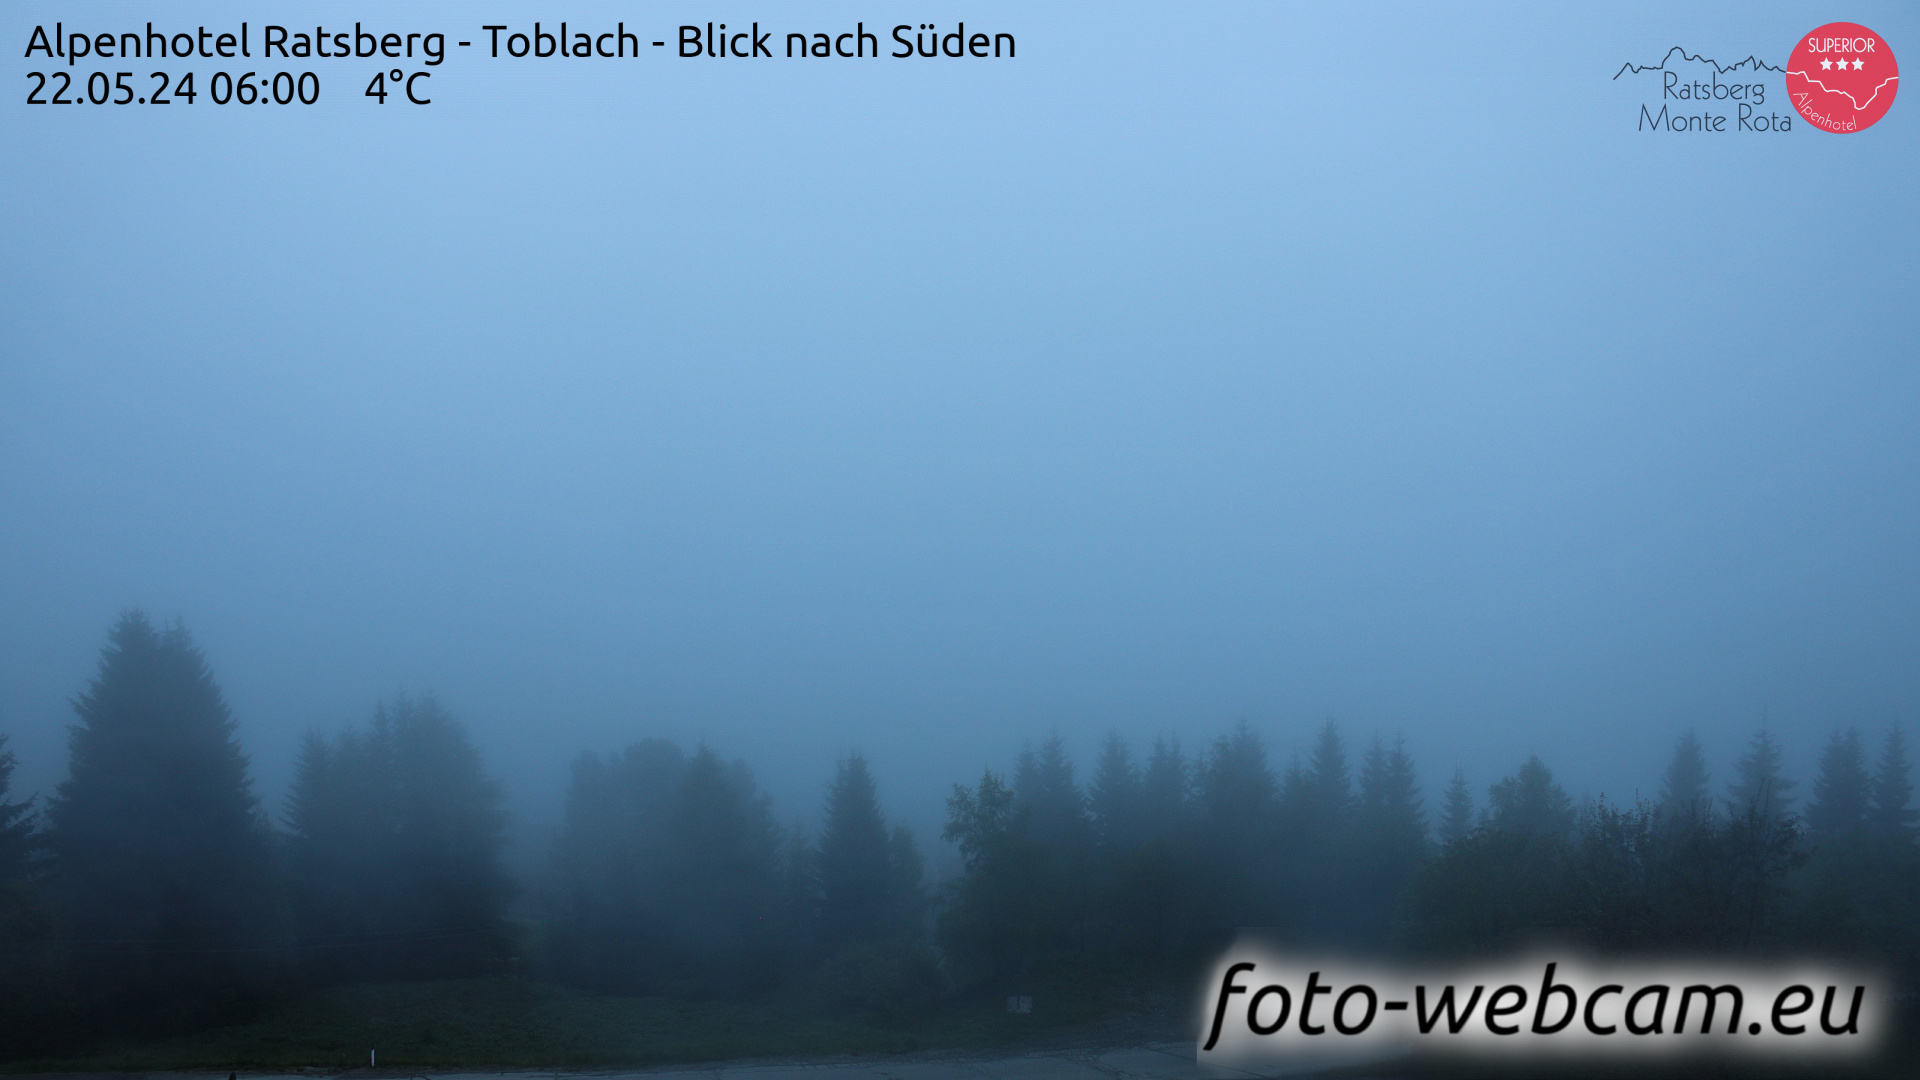 Toblach (Dolomitterne) Man. 06:03